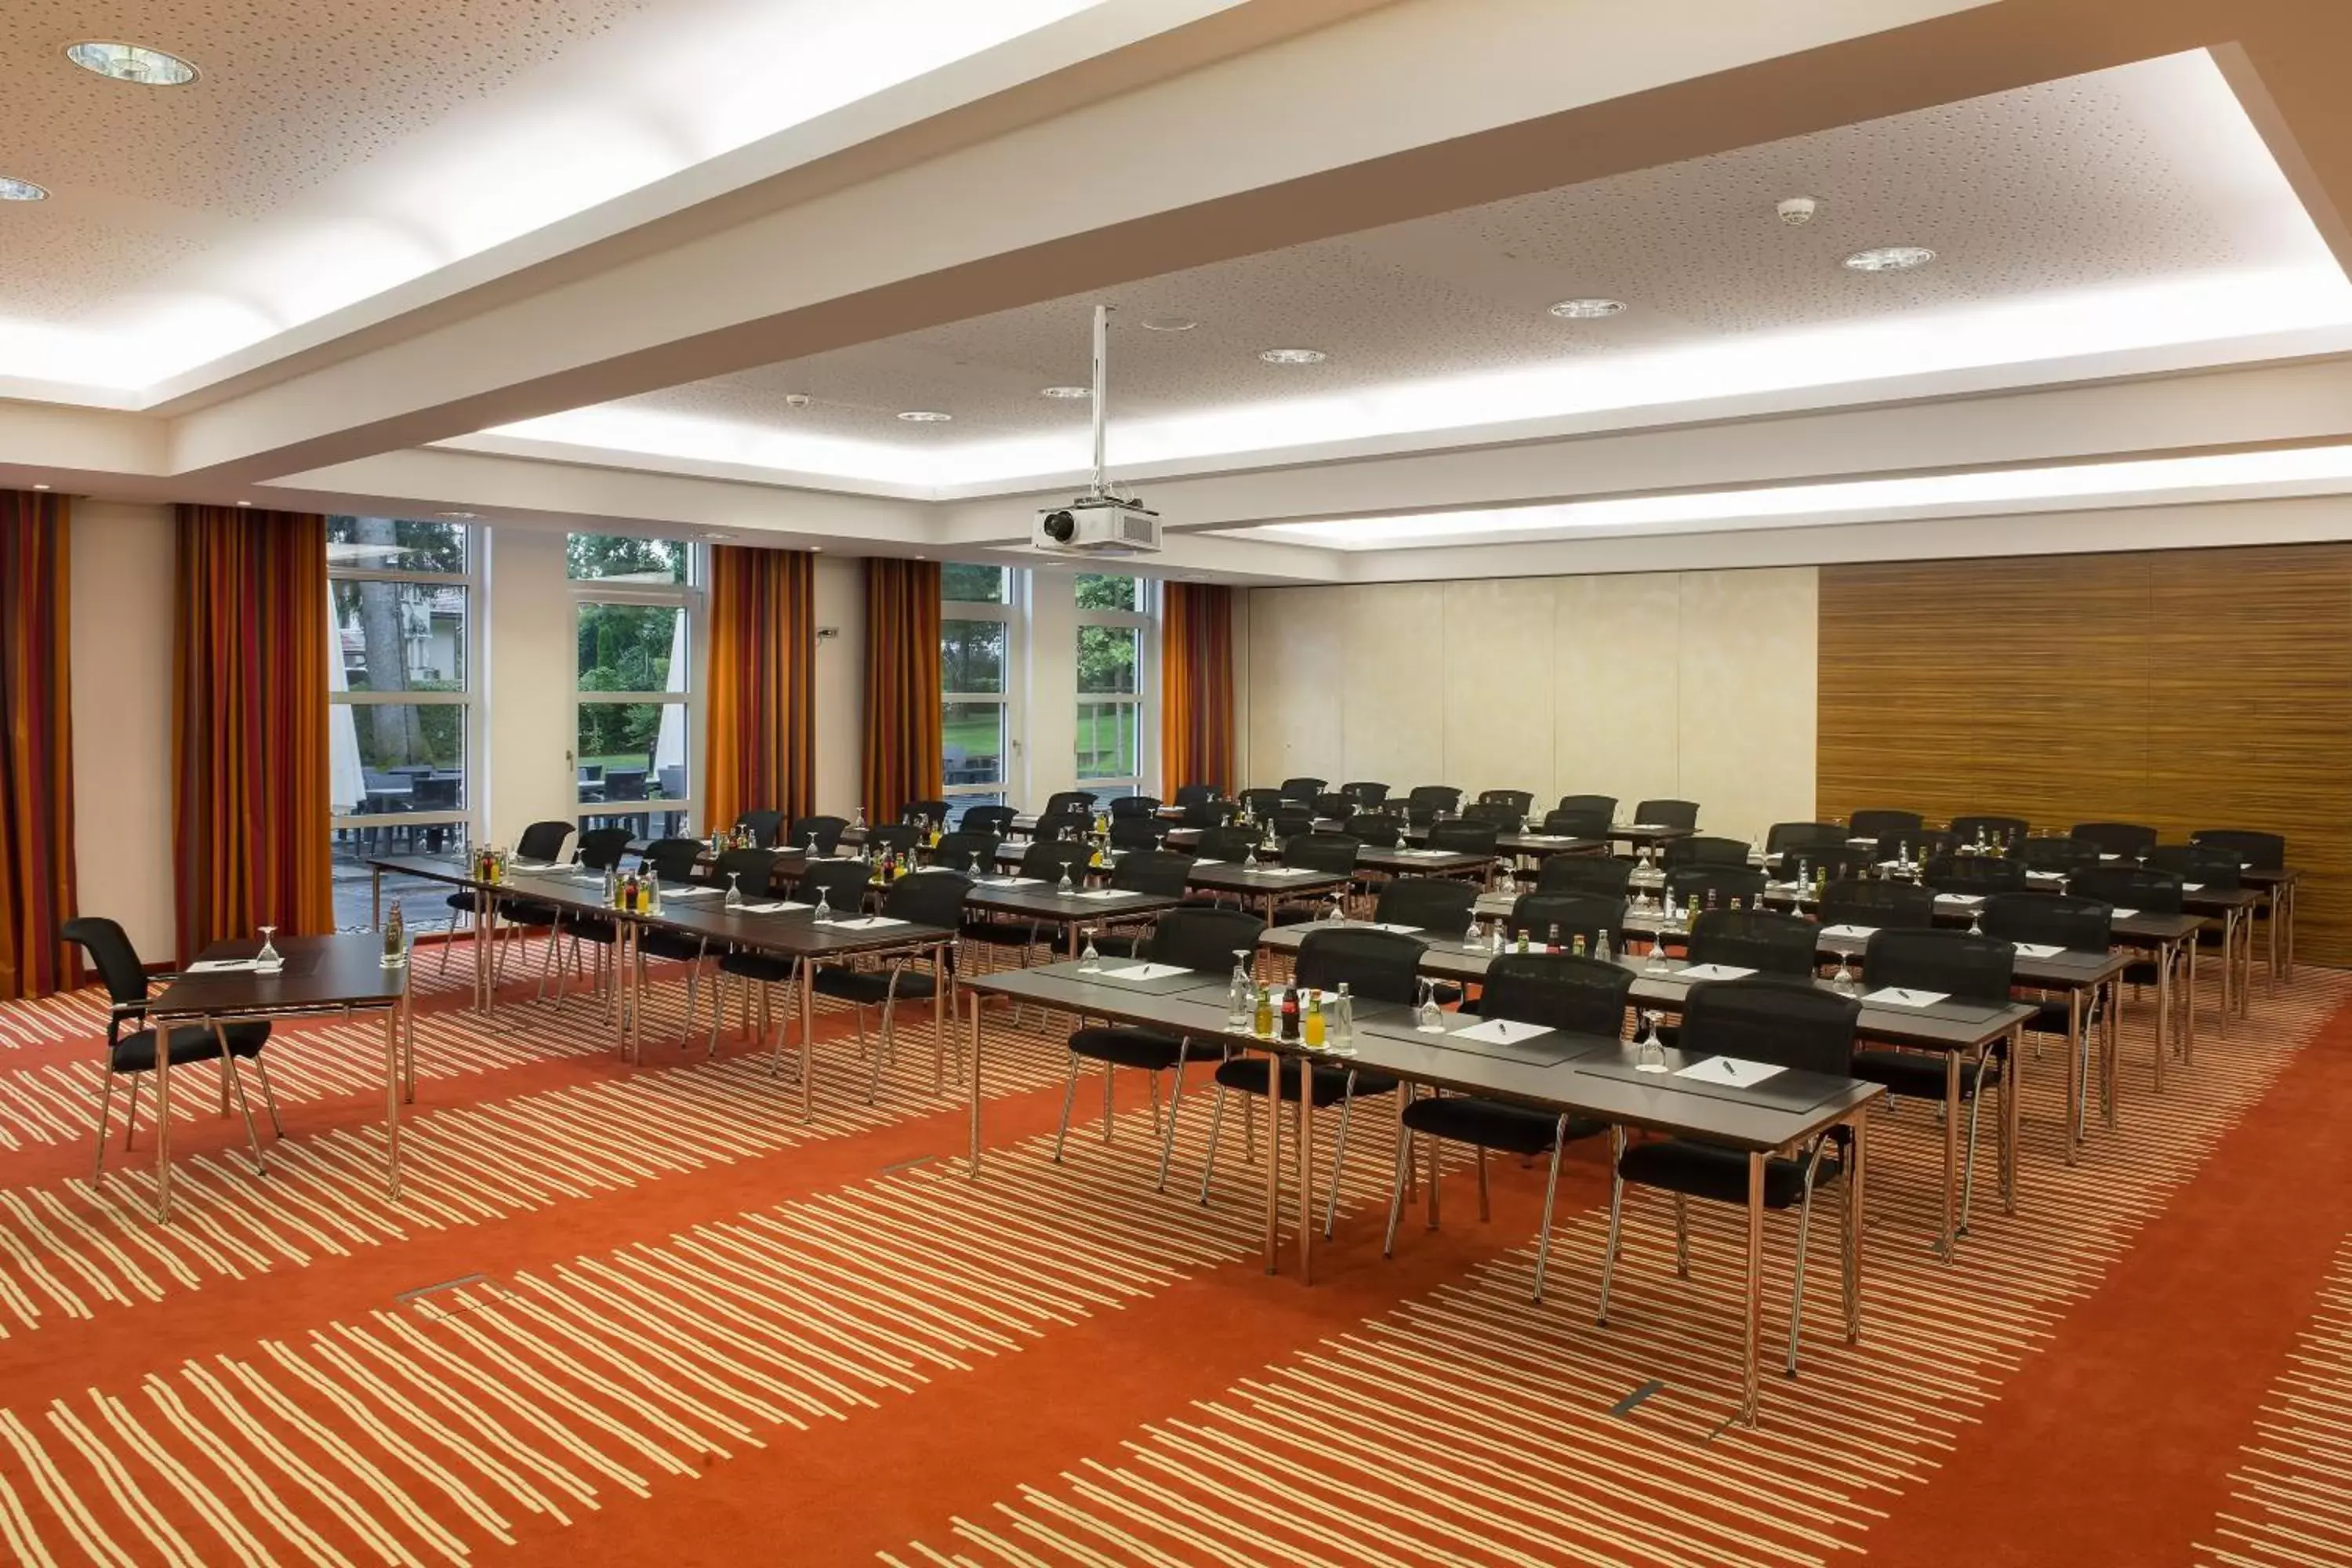 Meeting/conference room in Steigenberger Hotel Der Sonnenhof